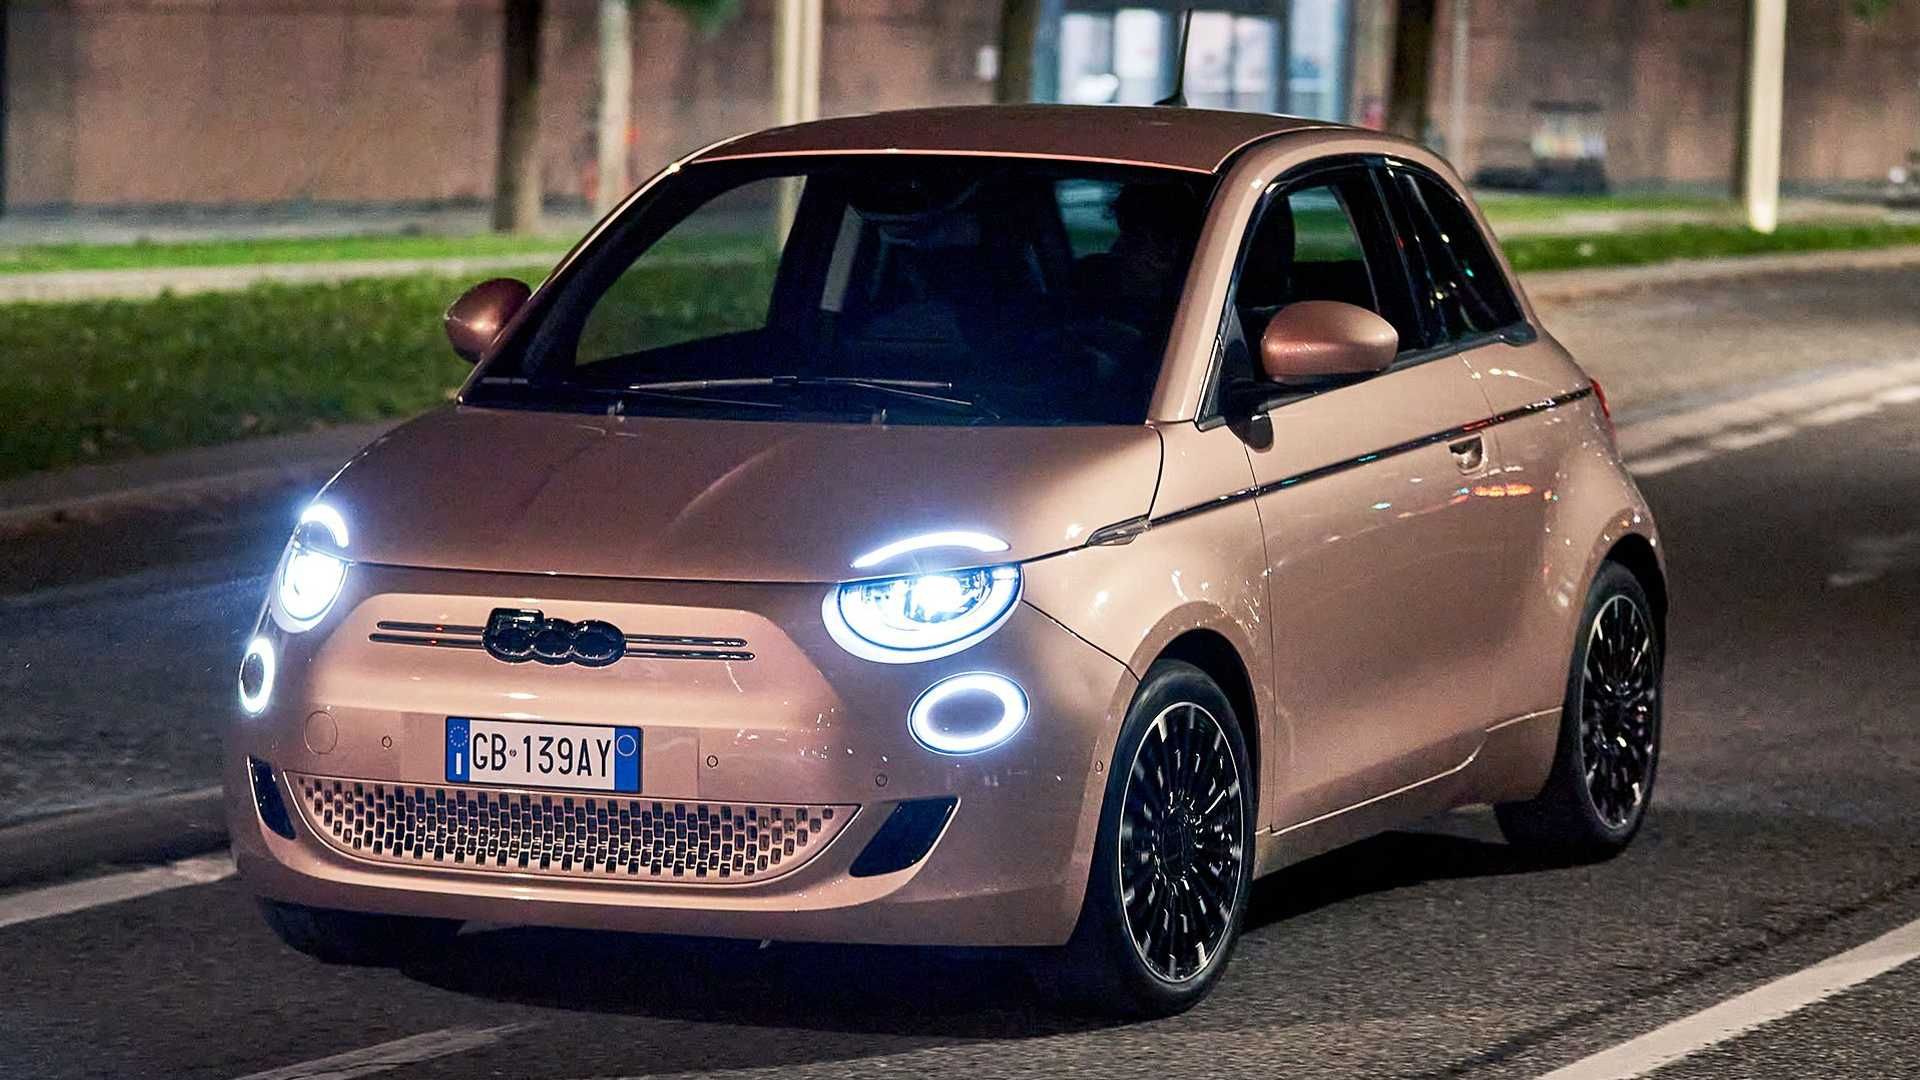 نمای سه چهارم خودروی الکتریکی فیات 500 / Fiat 500 Electric در خیابان با چراغ روشن